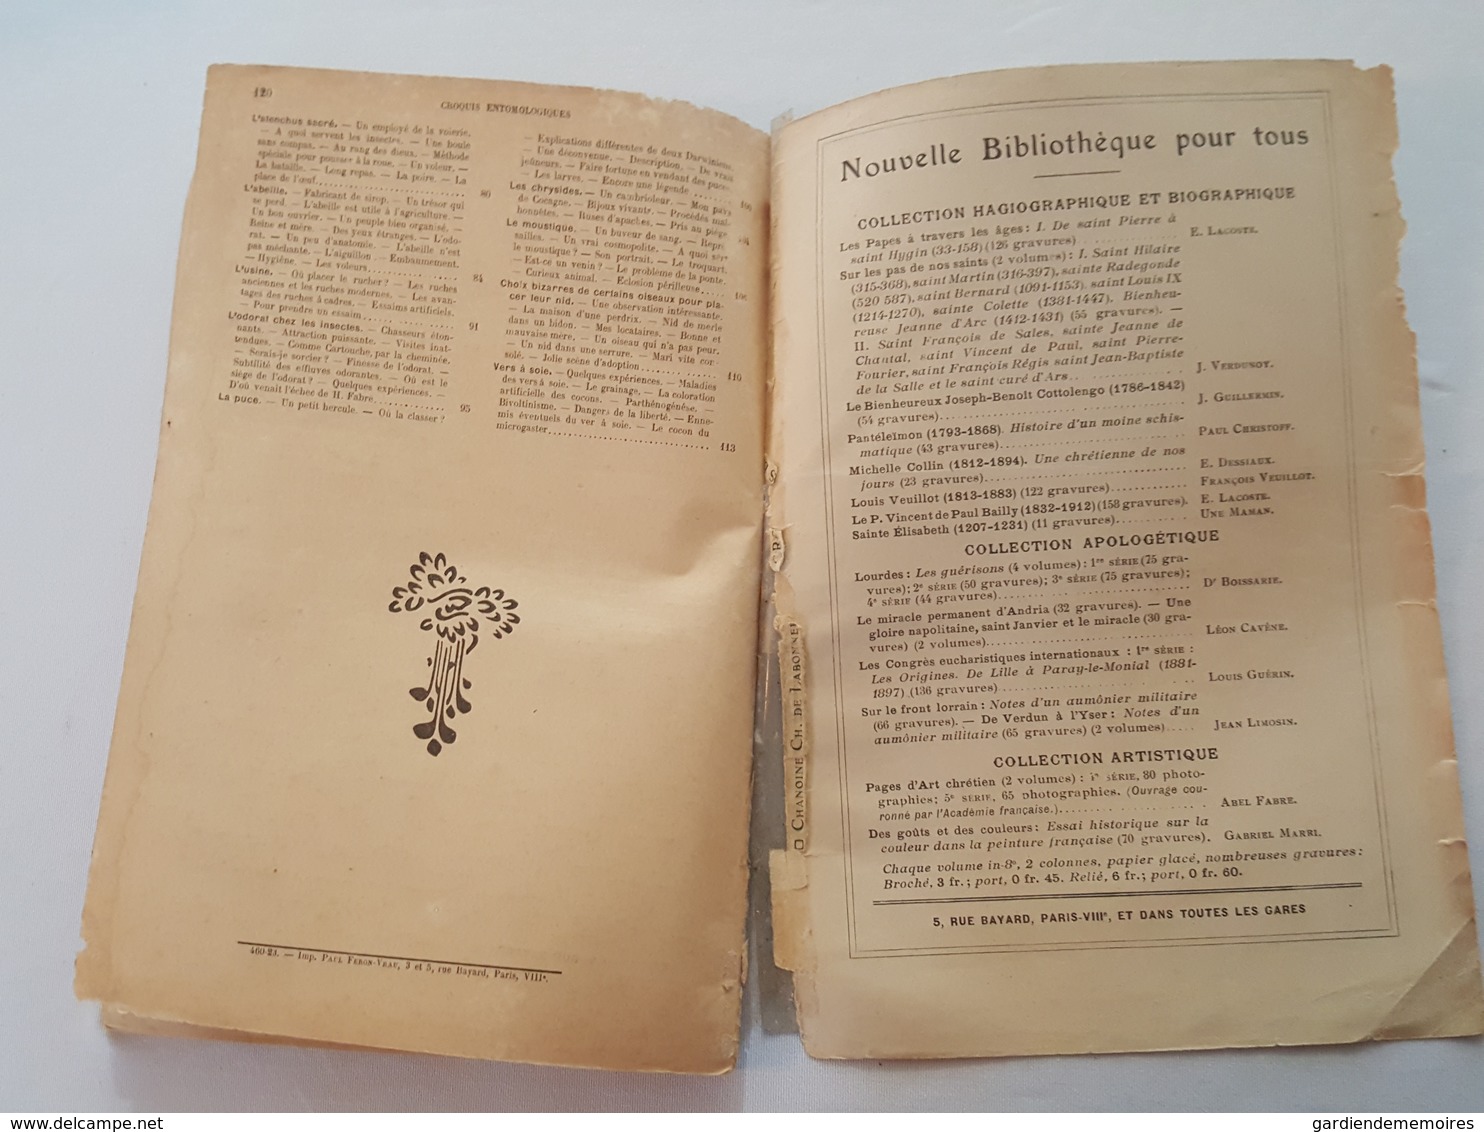 Croquis Entomologiques par le Chanoine Ch. de Labonnefon (La Rochelle), Notices sur Henri Fabre, dessins de l'auteur